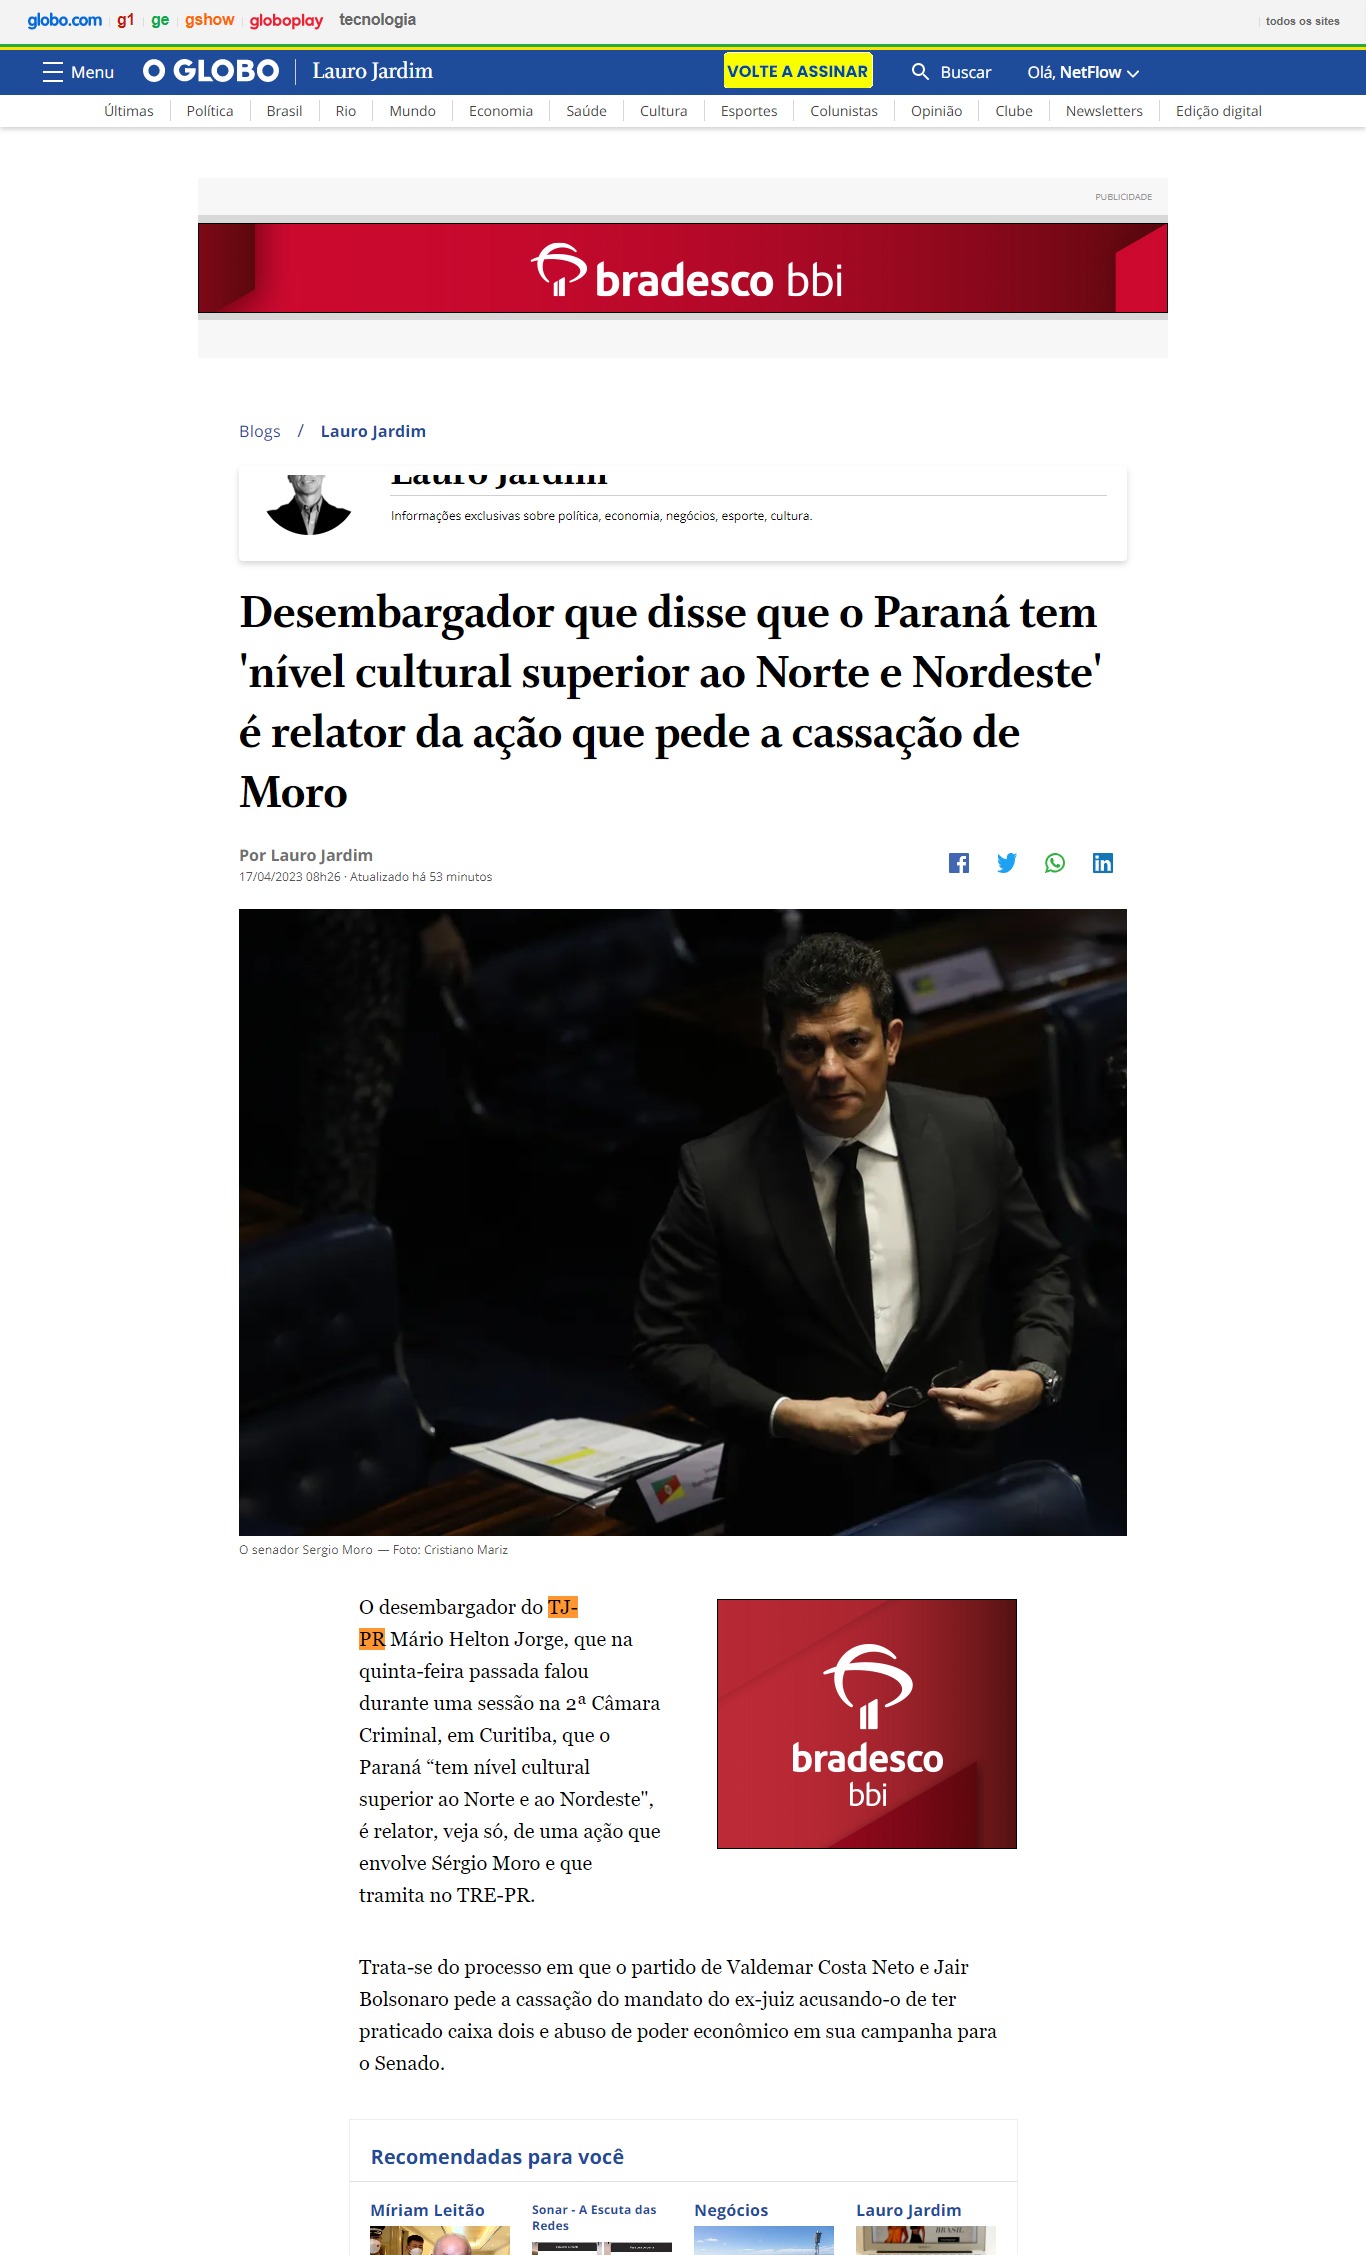 Desembargador que disse que o Paraná tem 'nível cultural superior ao Norte e Nordeste' é relator da ação que pede a cassação de Moro